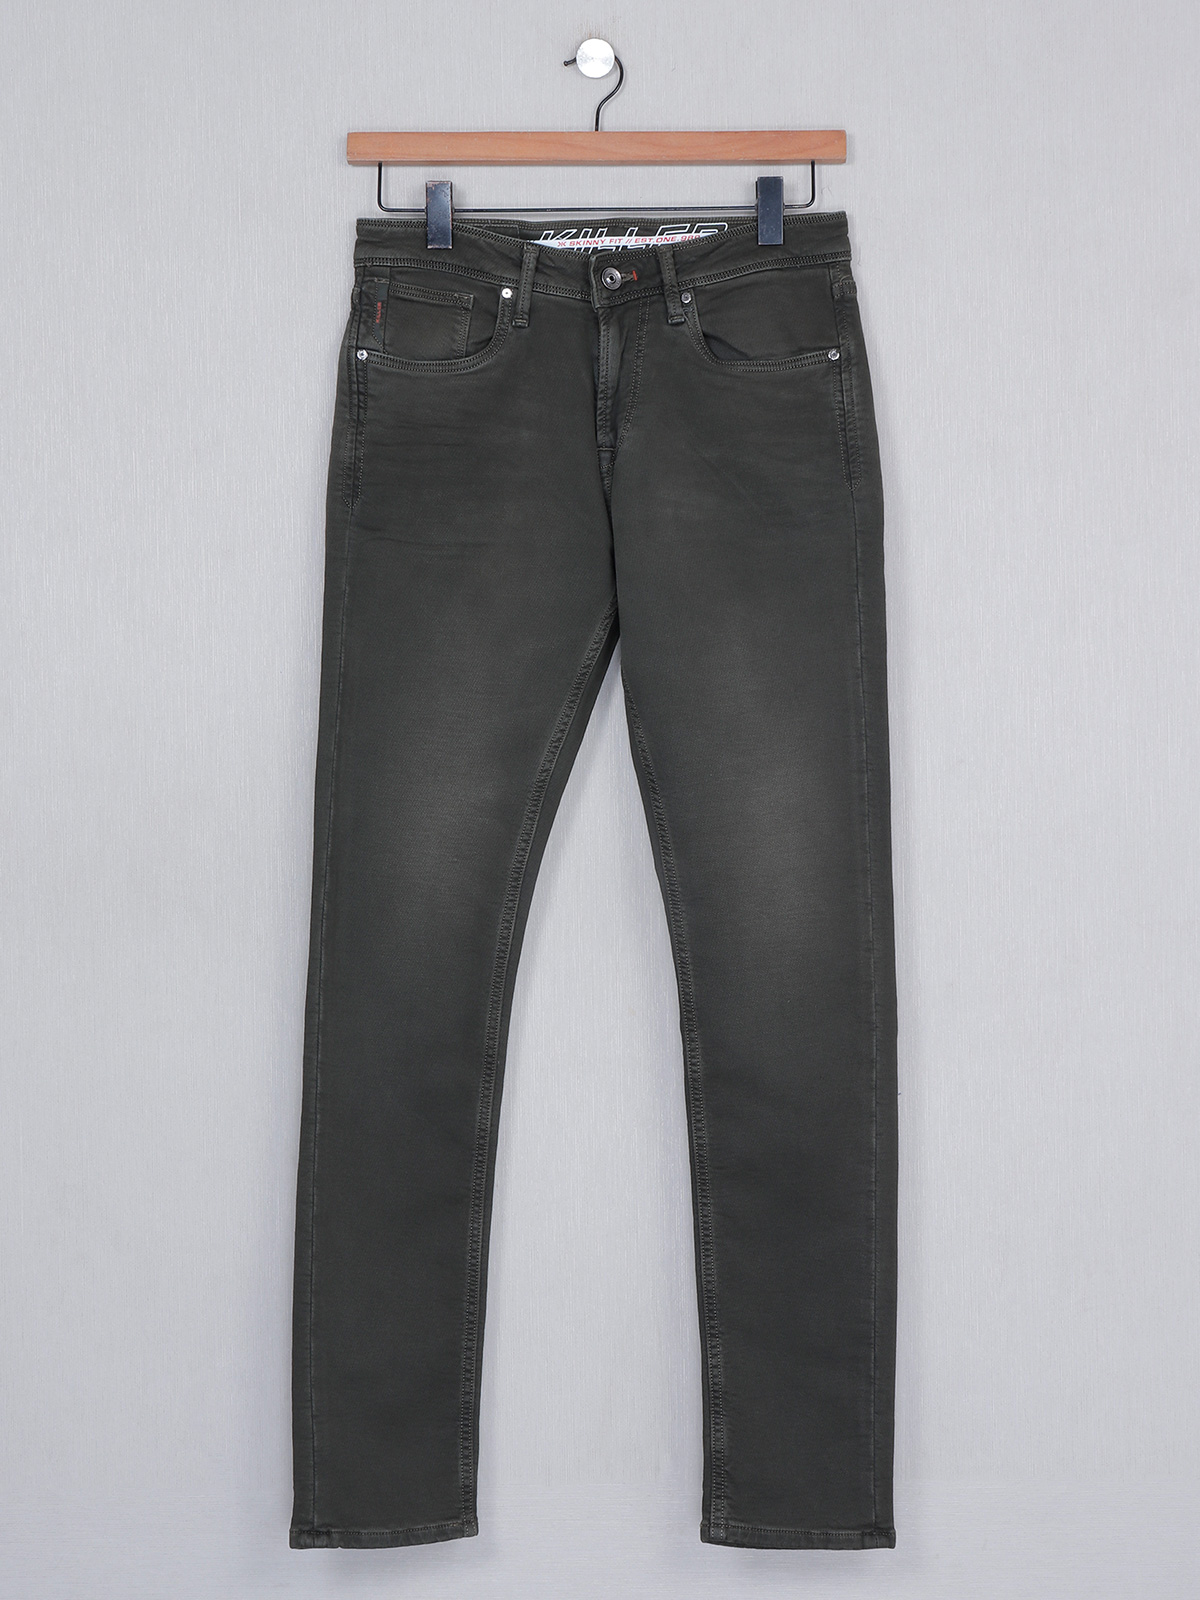 Killer denim olive slim fit washed men jeans - G3-MJE3593